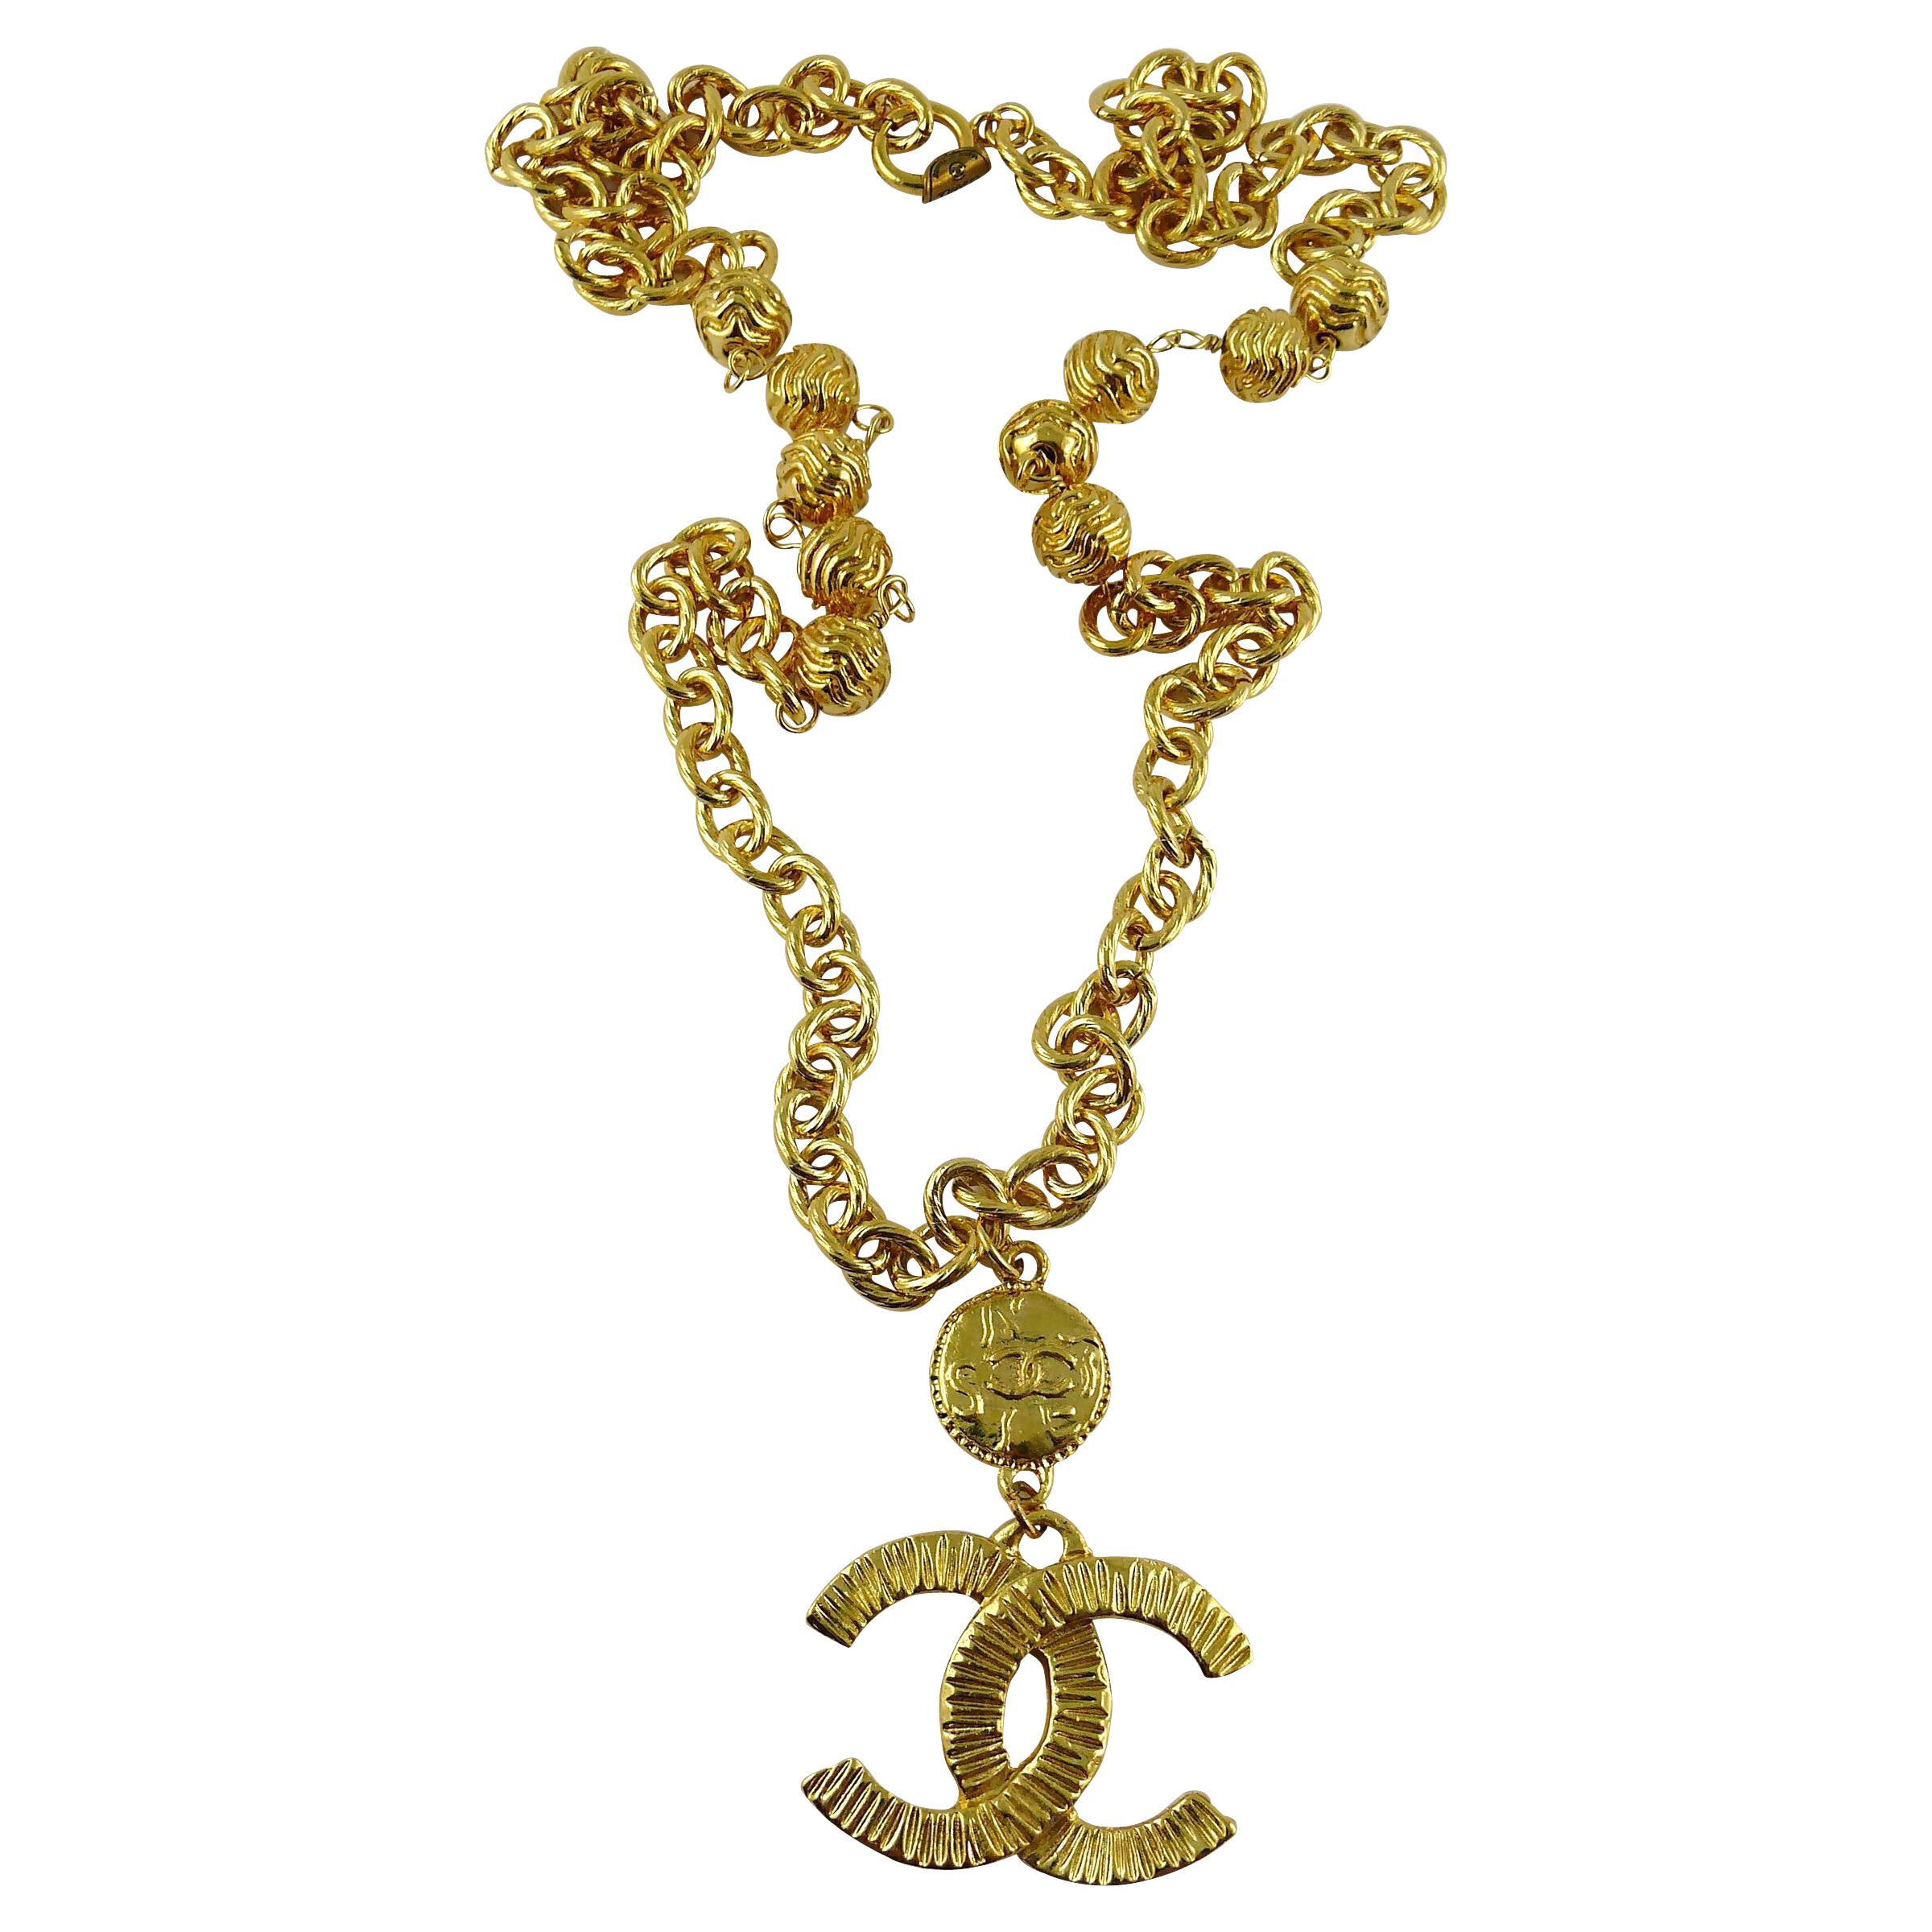 Vintage Chanel Gold Pendant - 226 For Sale on 1stDibs